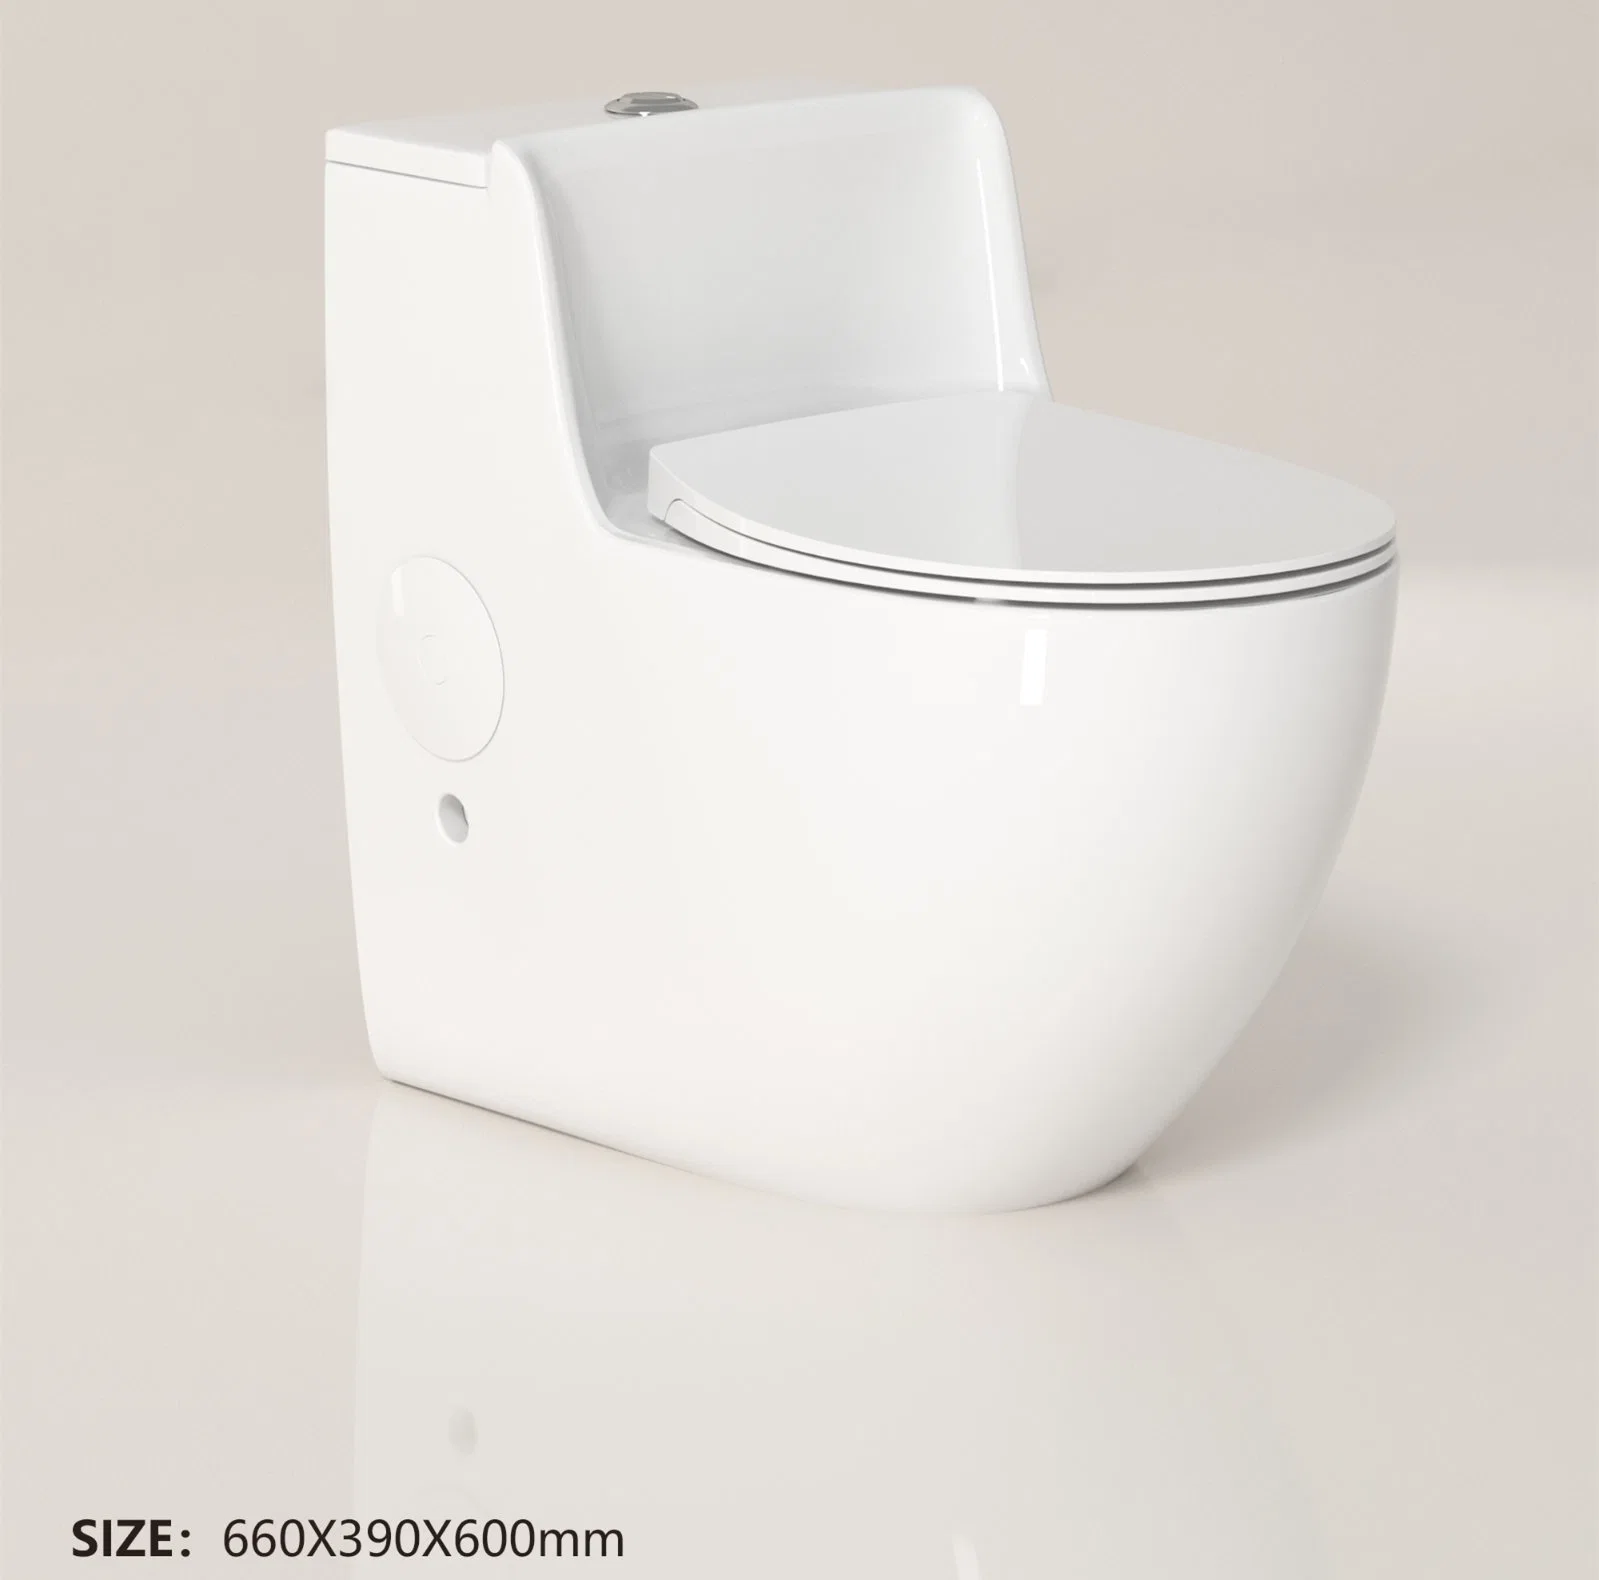 Aparatos sanitarios Wc cuarto de baño blanco cerámica de estilo europeo wc independiente